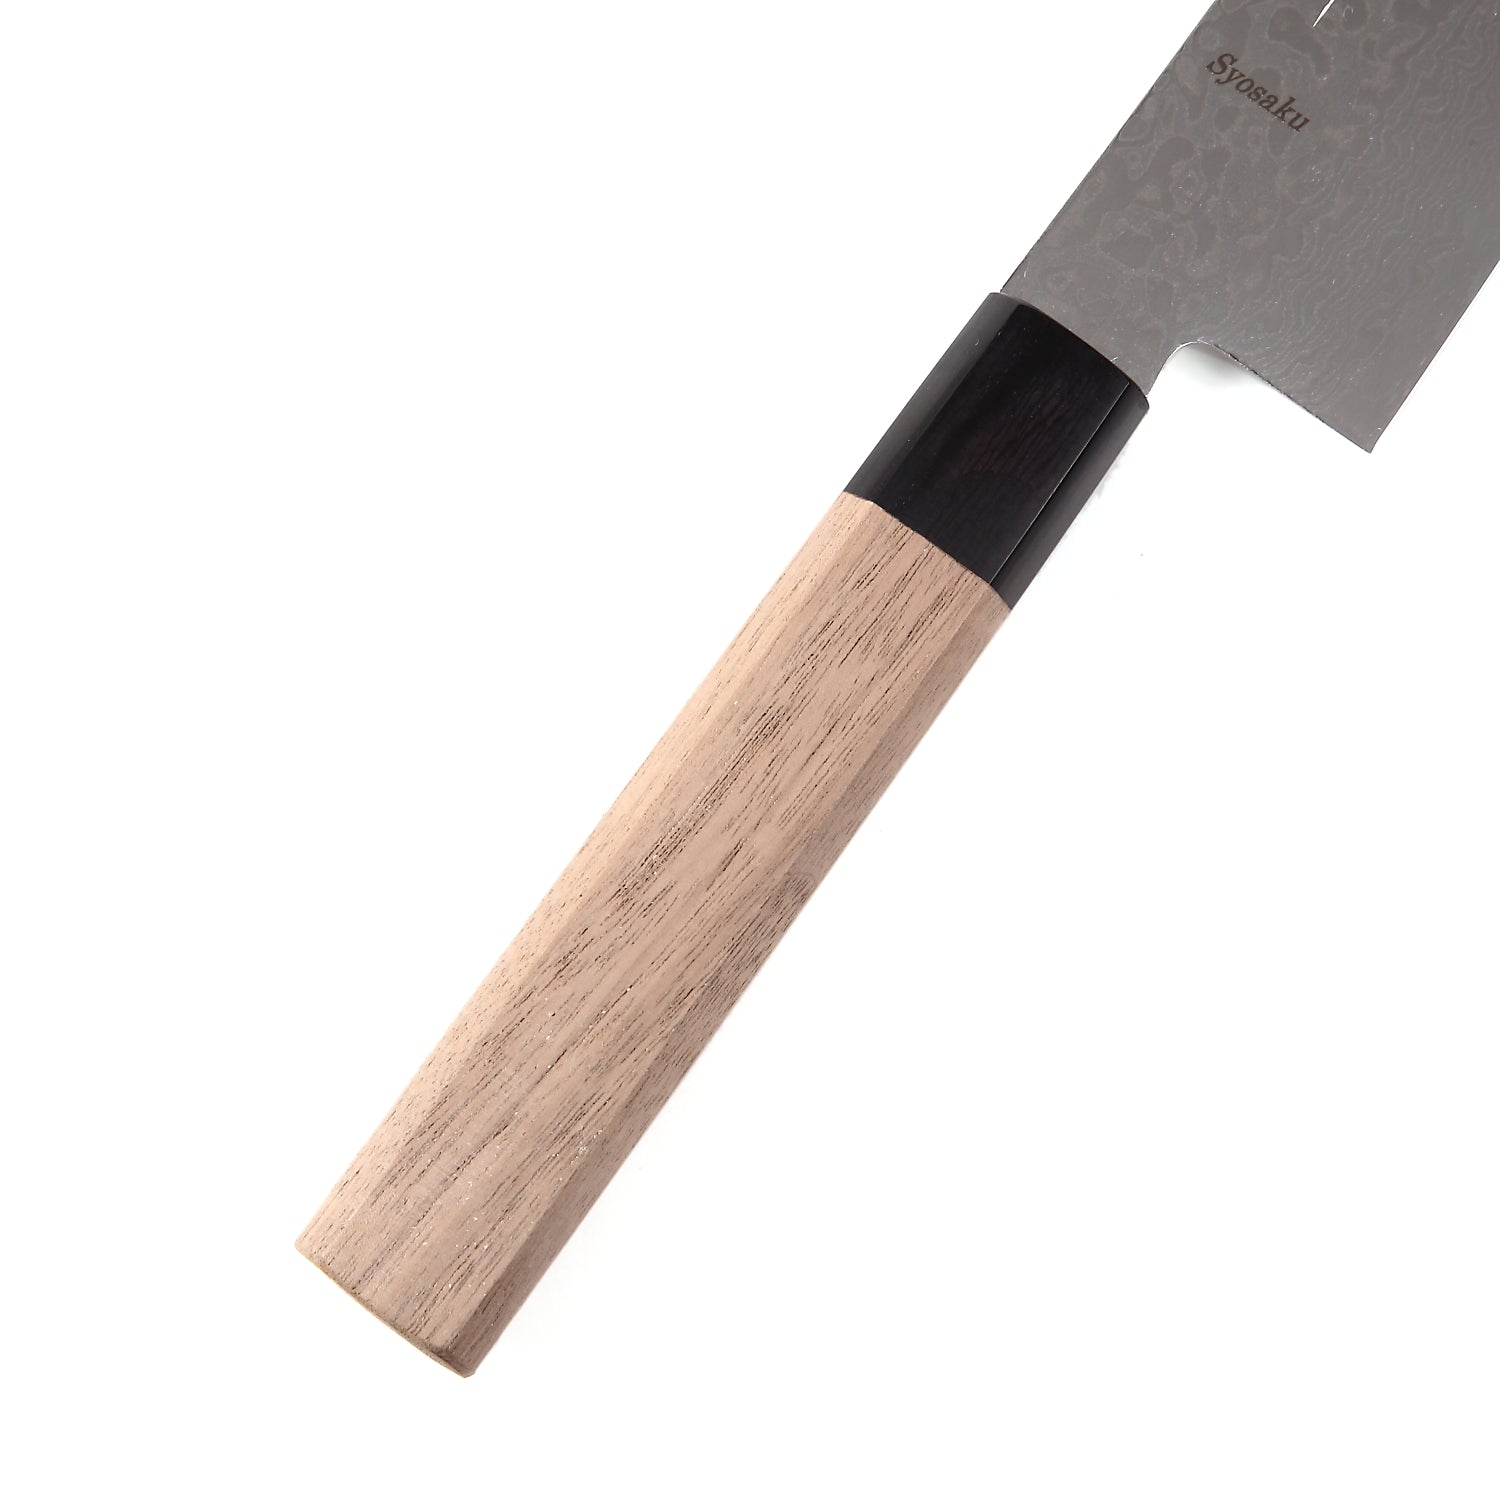 Syosaku Japanese Chef Knife Damascus ZA18 69 Layer Octagonal Walnut Handle, Gyuto 8.3-inch (210mm)